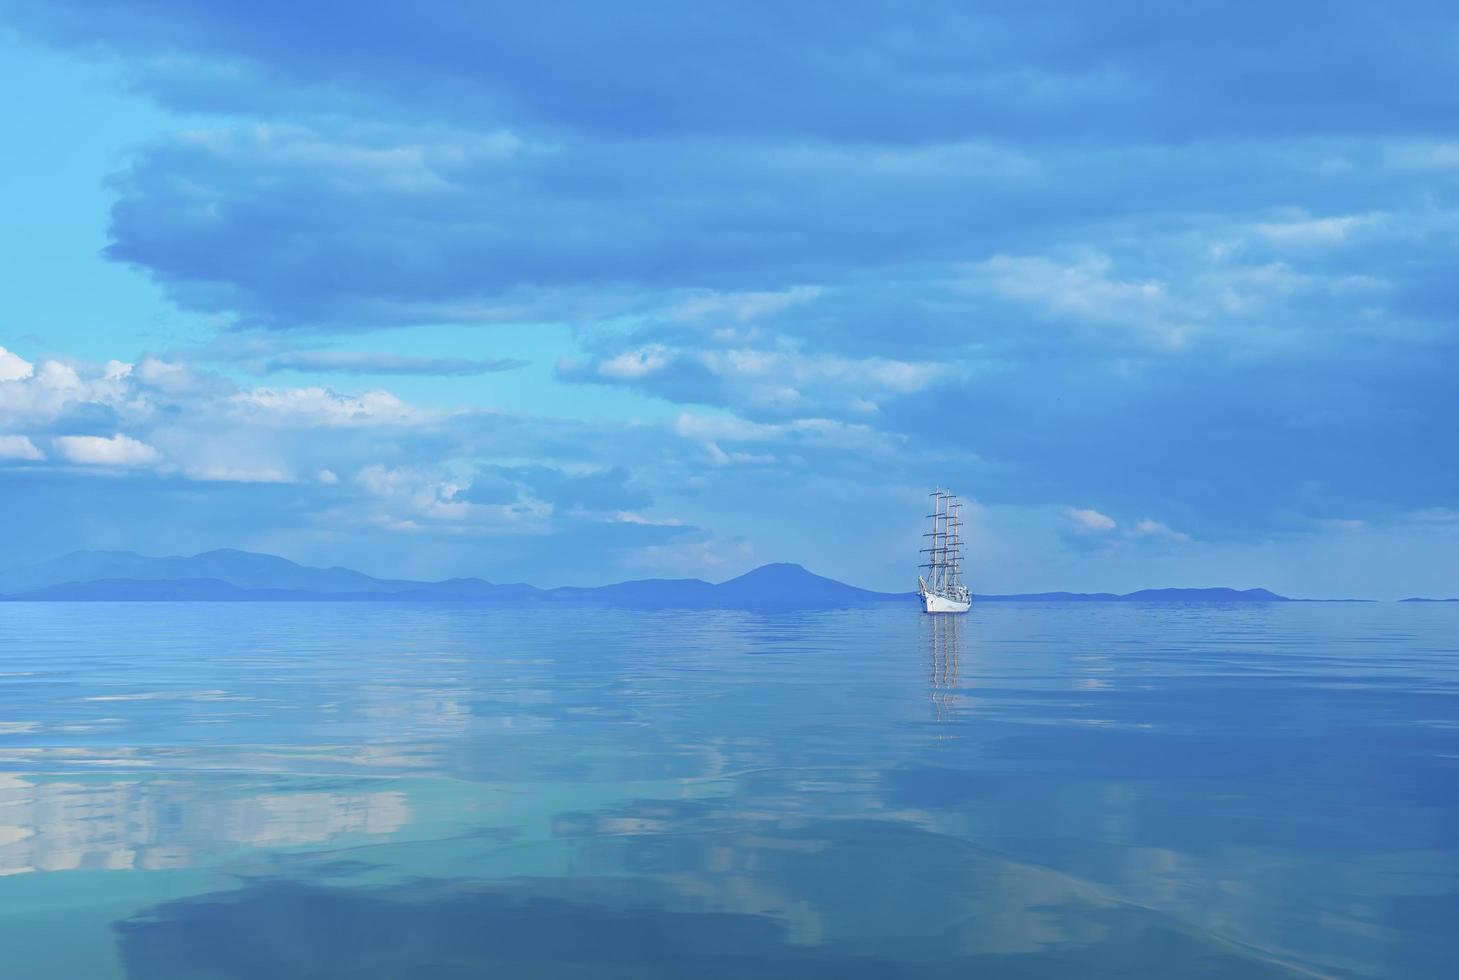 zeegezicht met een prachtige zeilboot aan de horizon. foto